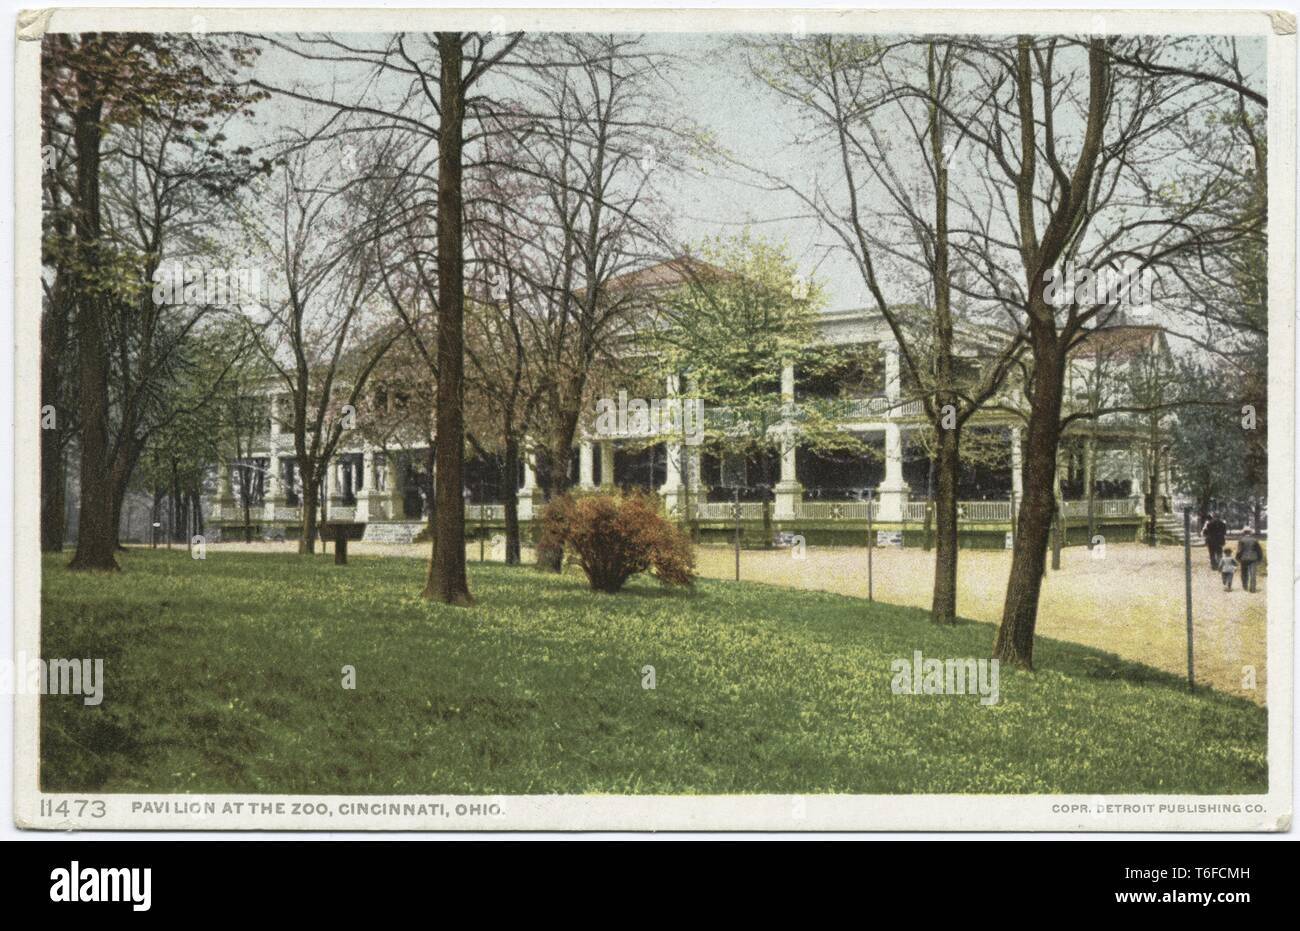 Detroit Publishing Company Ansichtskarte Reproduktion der Pavillon zu einem Cincinnati Zoo, Ohio, 1914. Von der New York Public Library. () Stockfoto